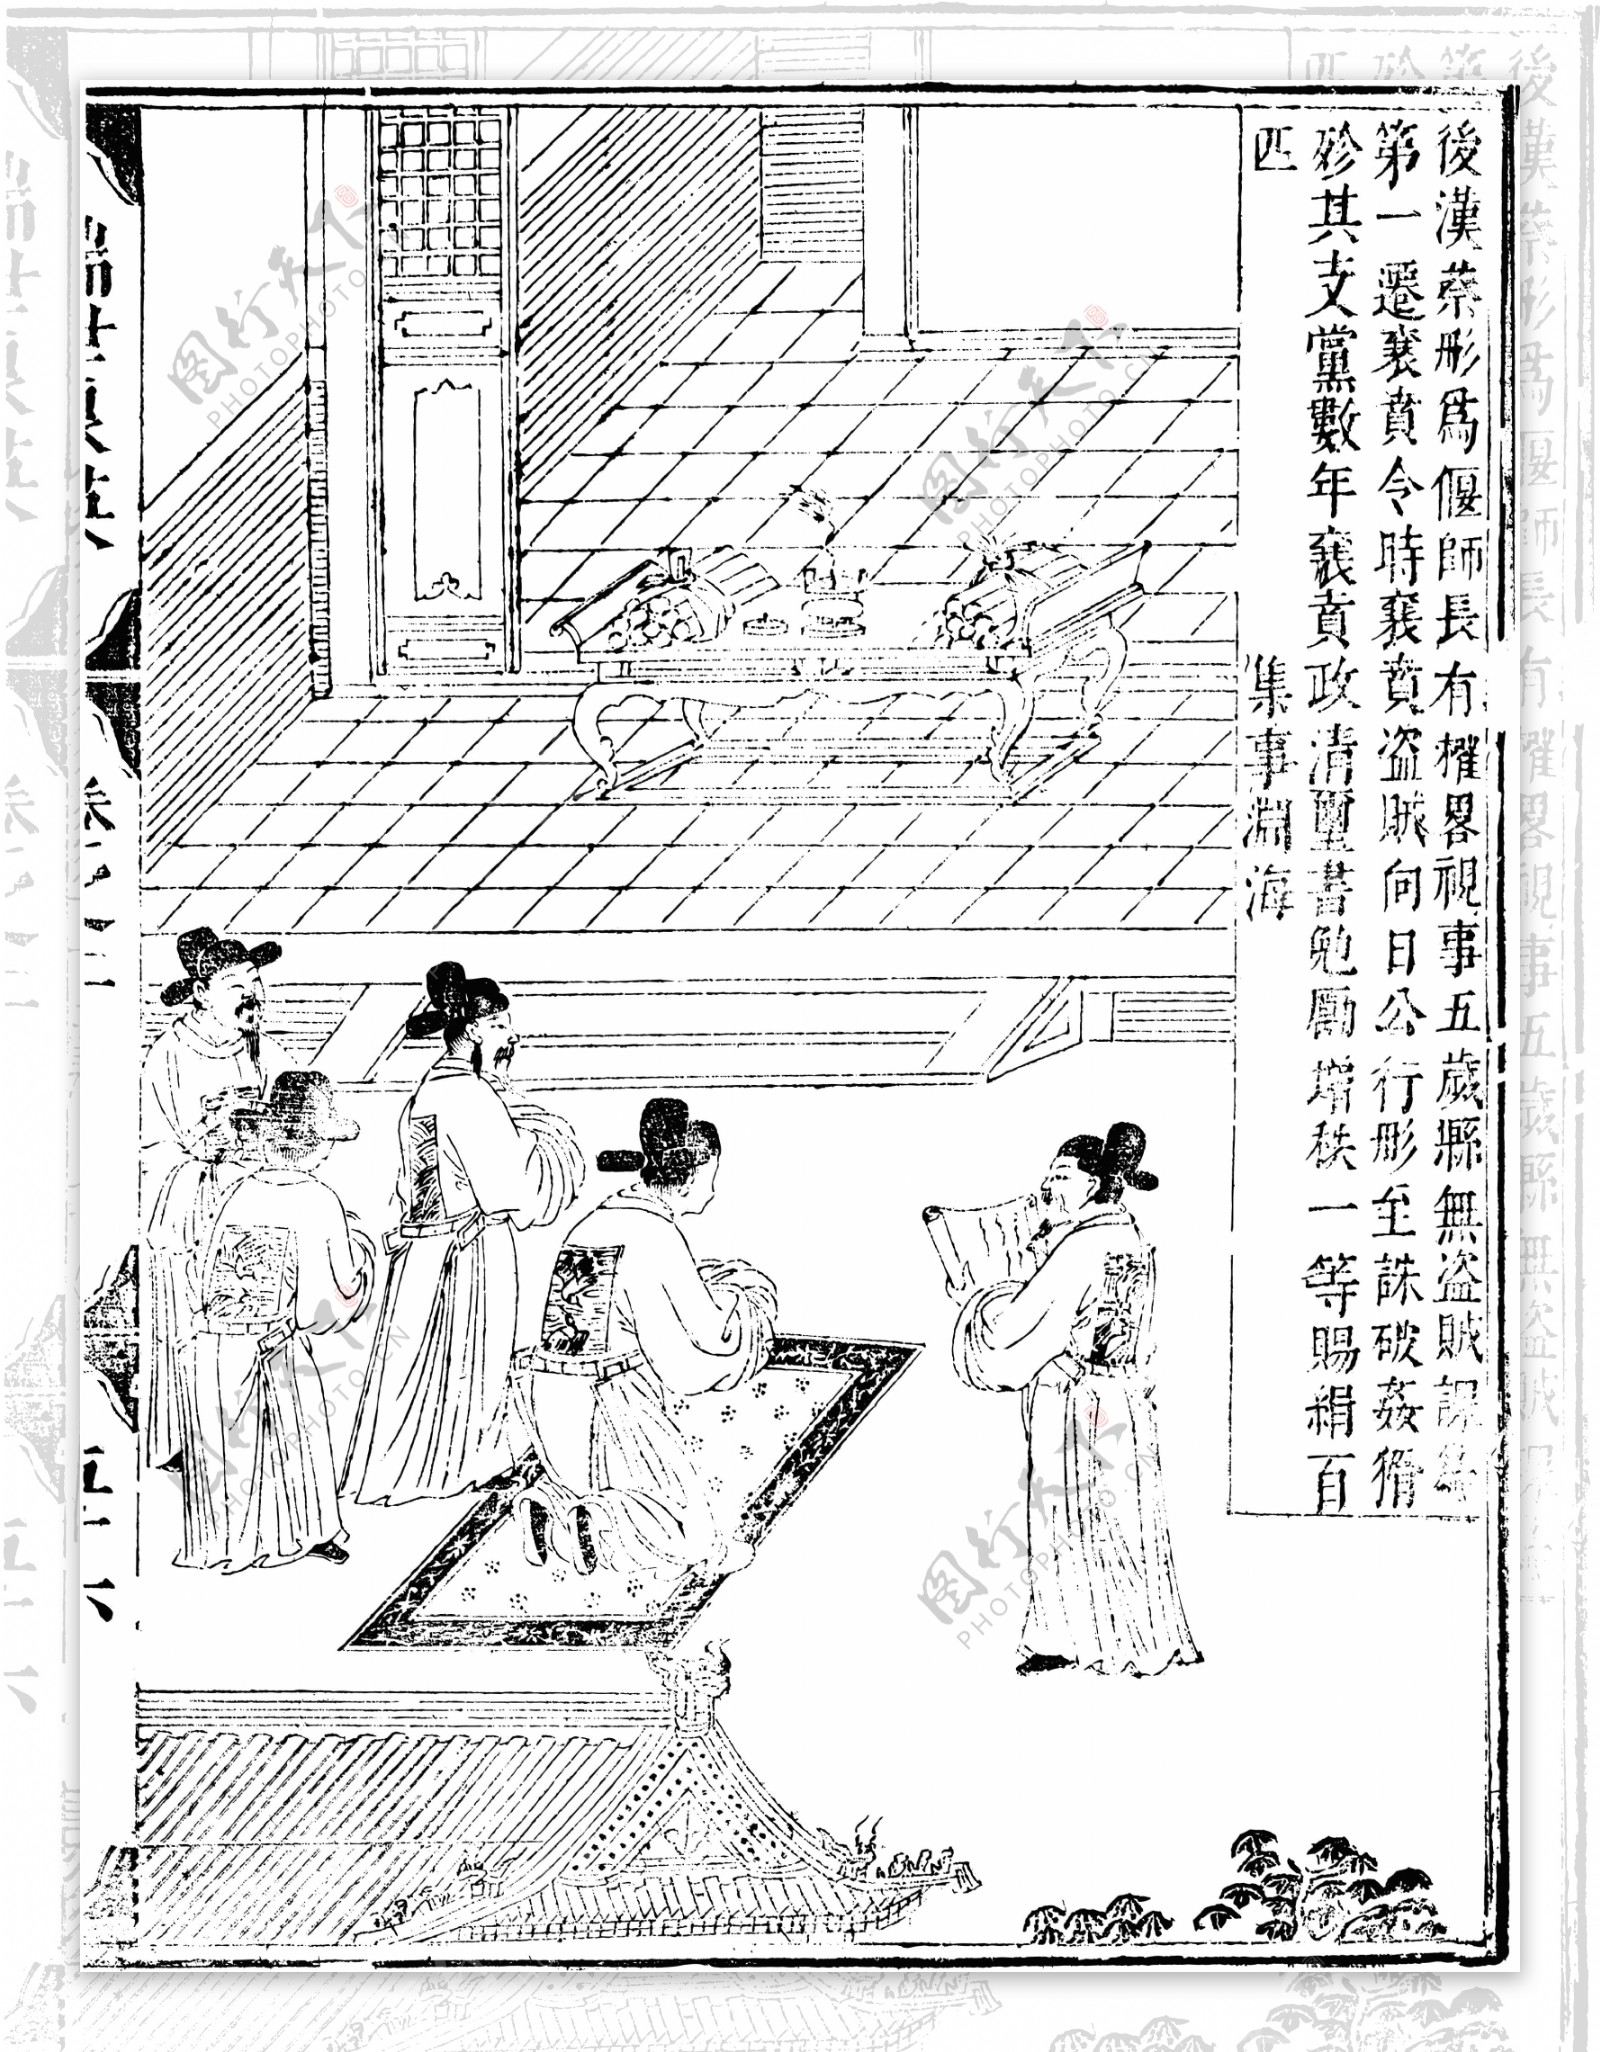 瑞世良英木刻版画中国传统文化30